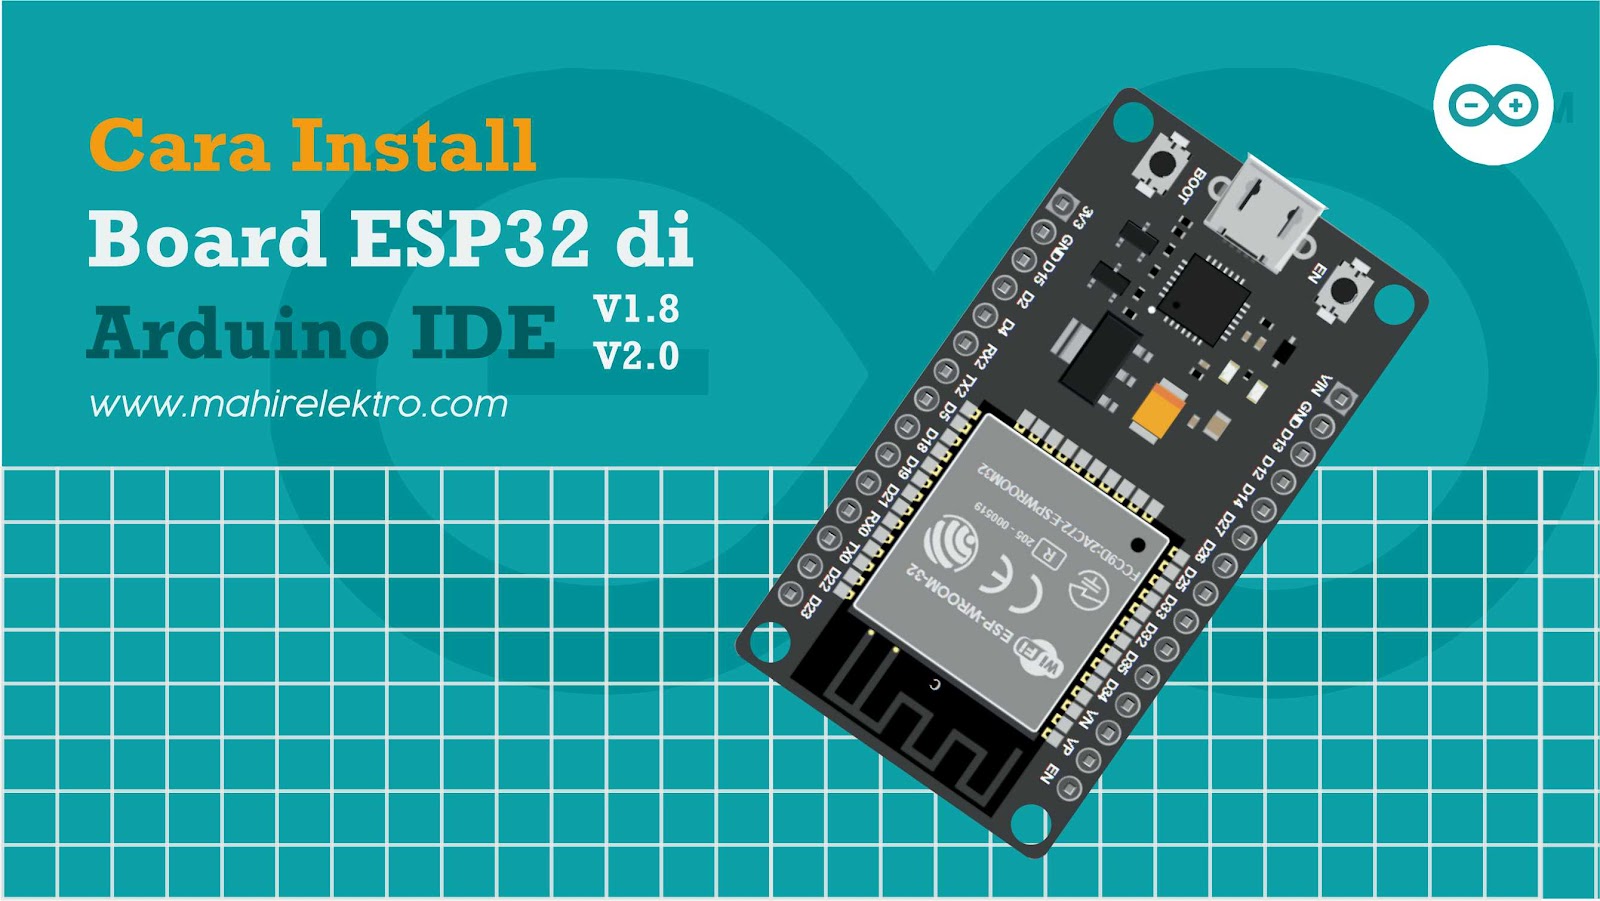 Cara Install Board ESP32 di Arduino IDE